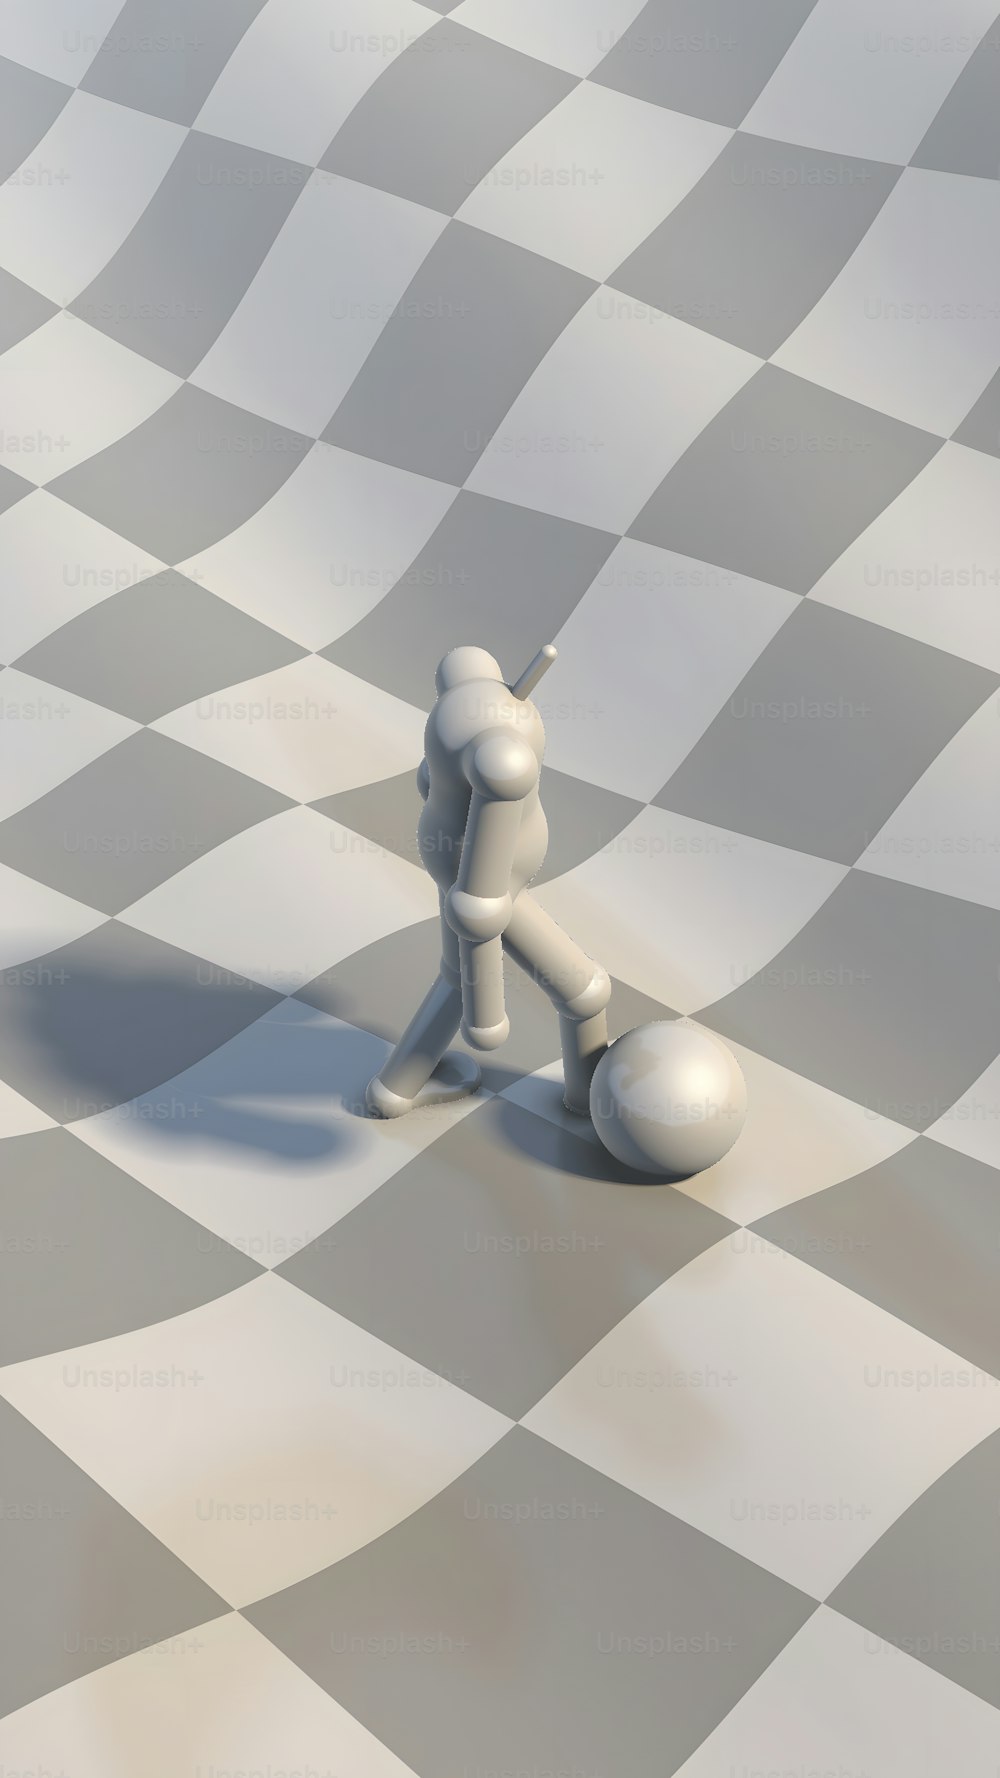 uma pessoa em cima de um tabuleiro de xadrez